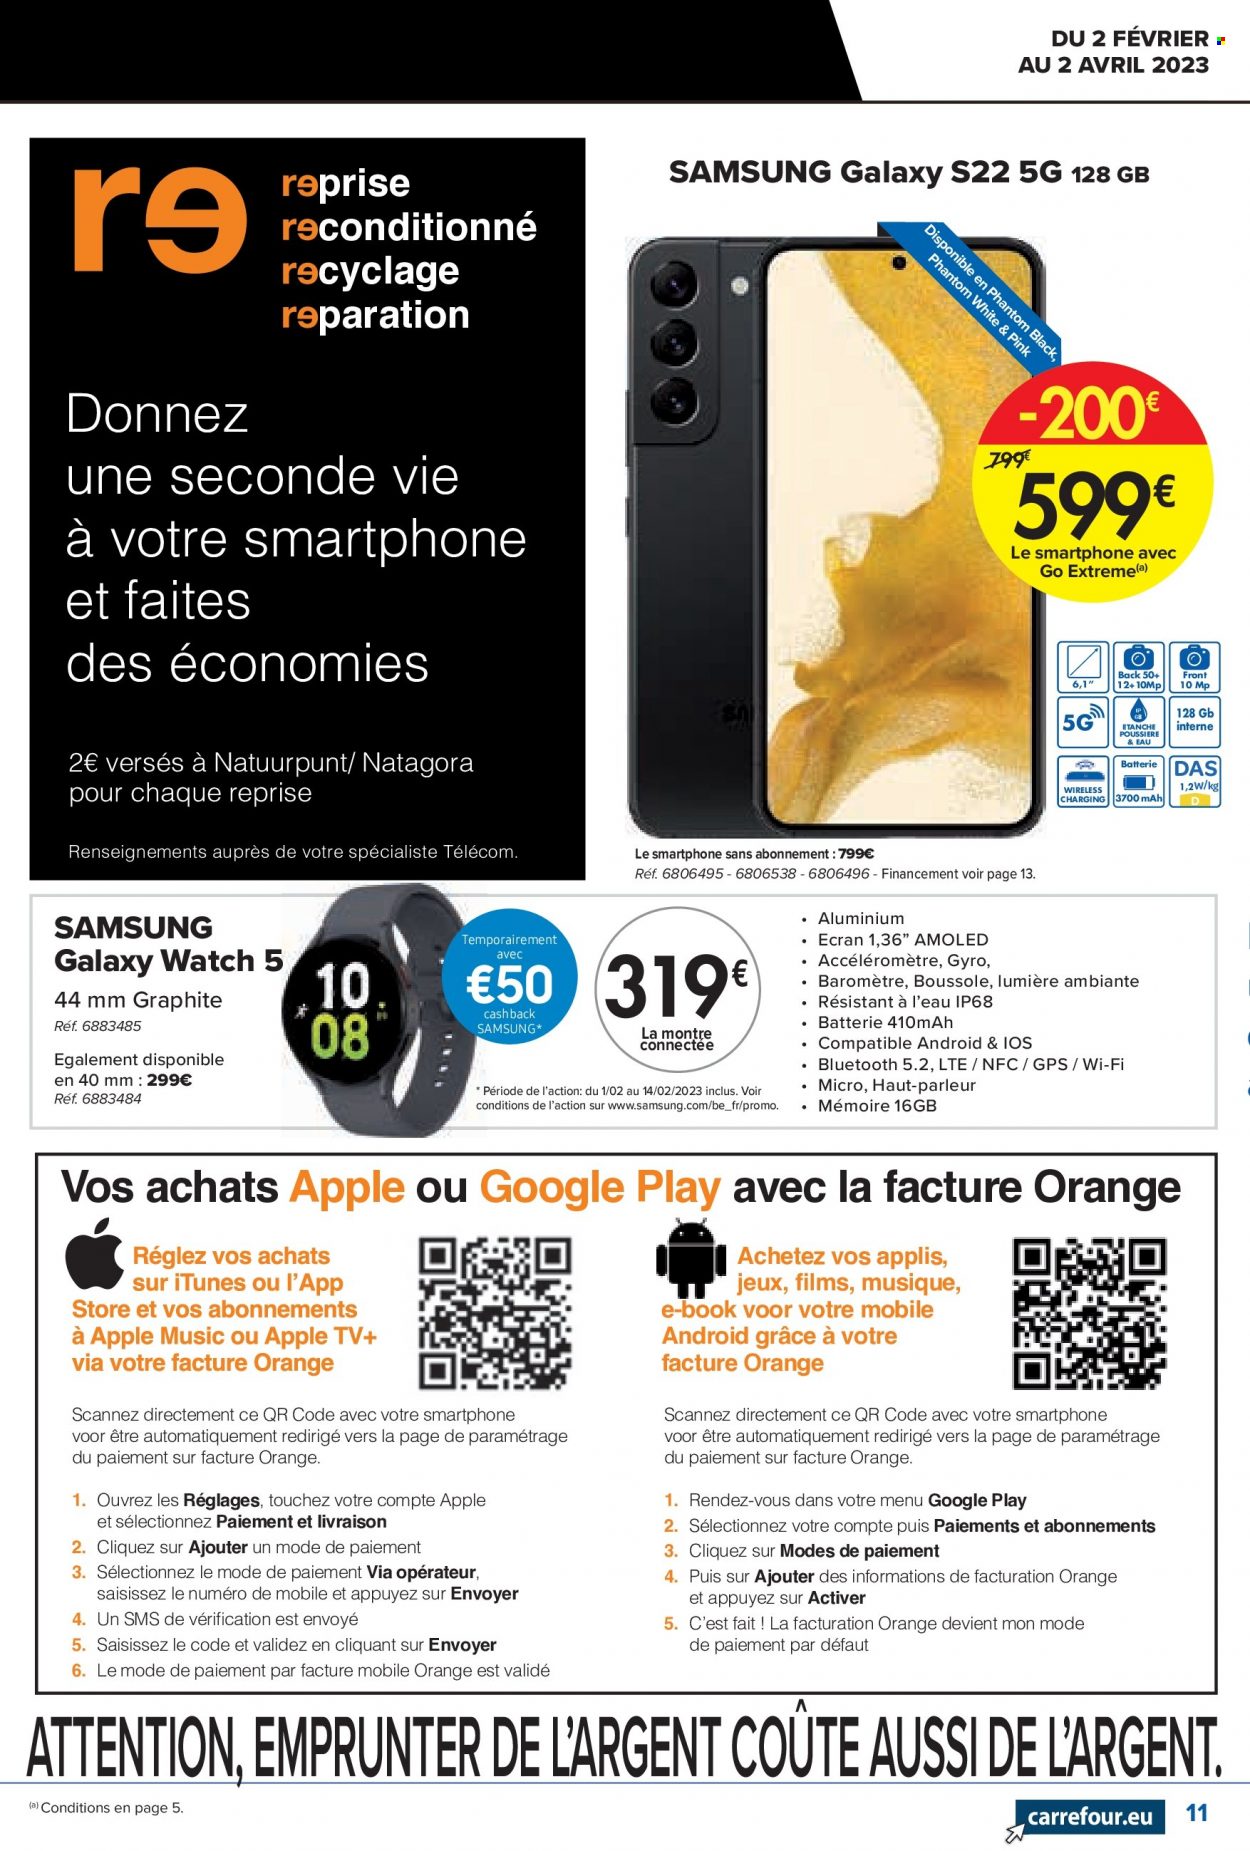 thumbnail - Catalogue Carrefour hypermarkt - 02/02/2023 - 02/04/2023 - Produits soldés - Samsung, Apple, montre, montre connectée. Page 11.